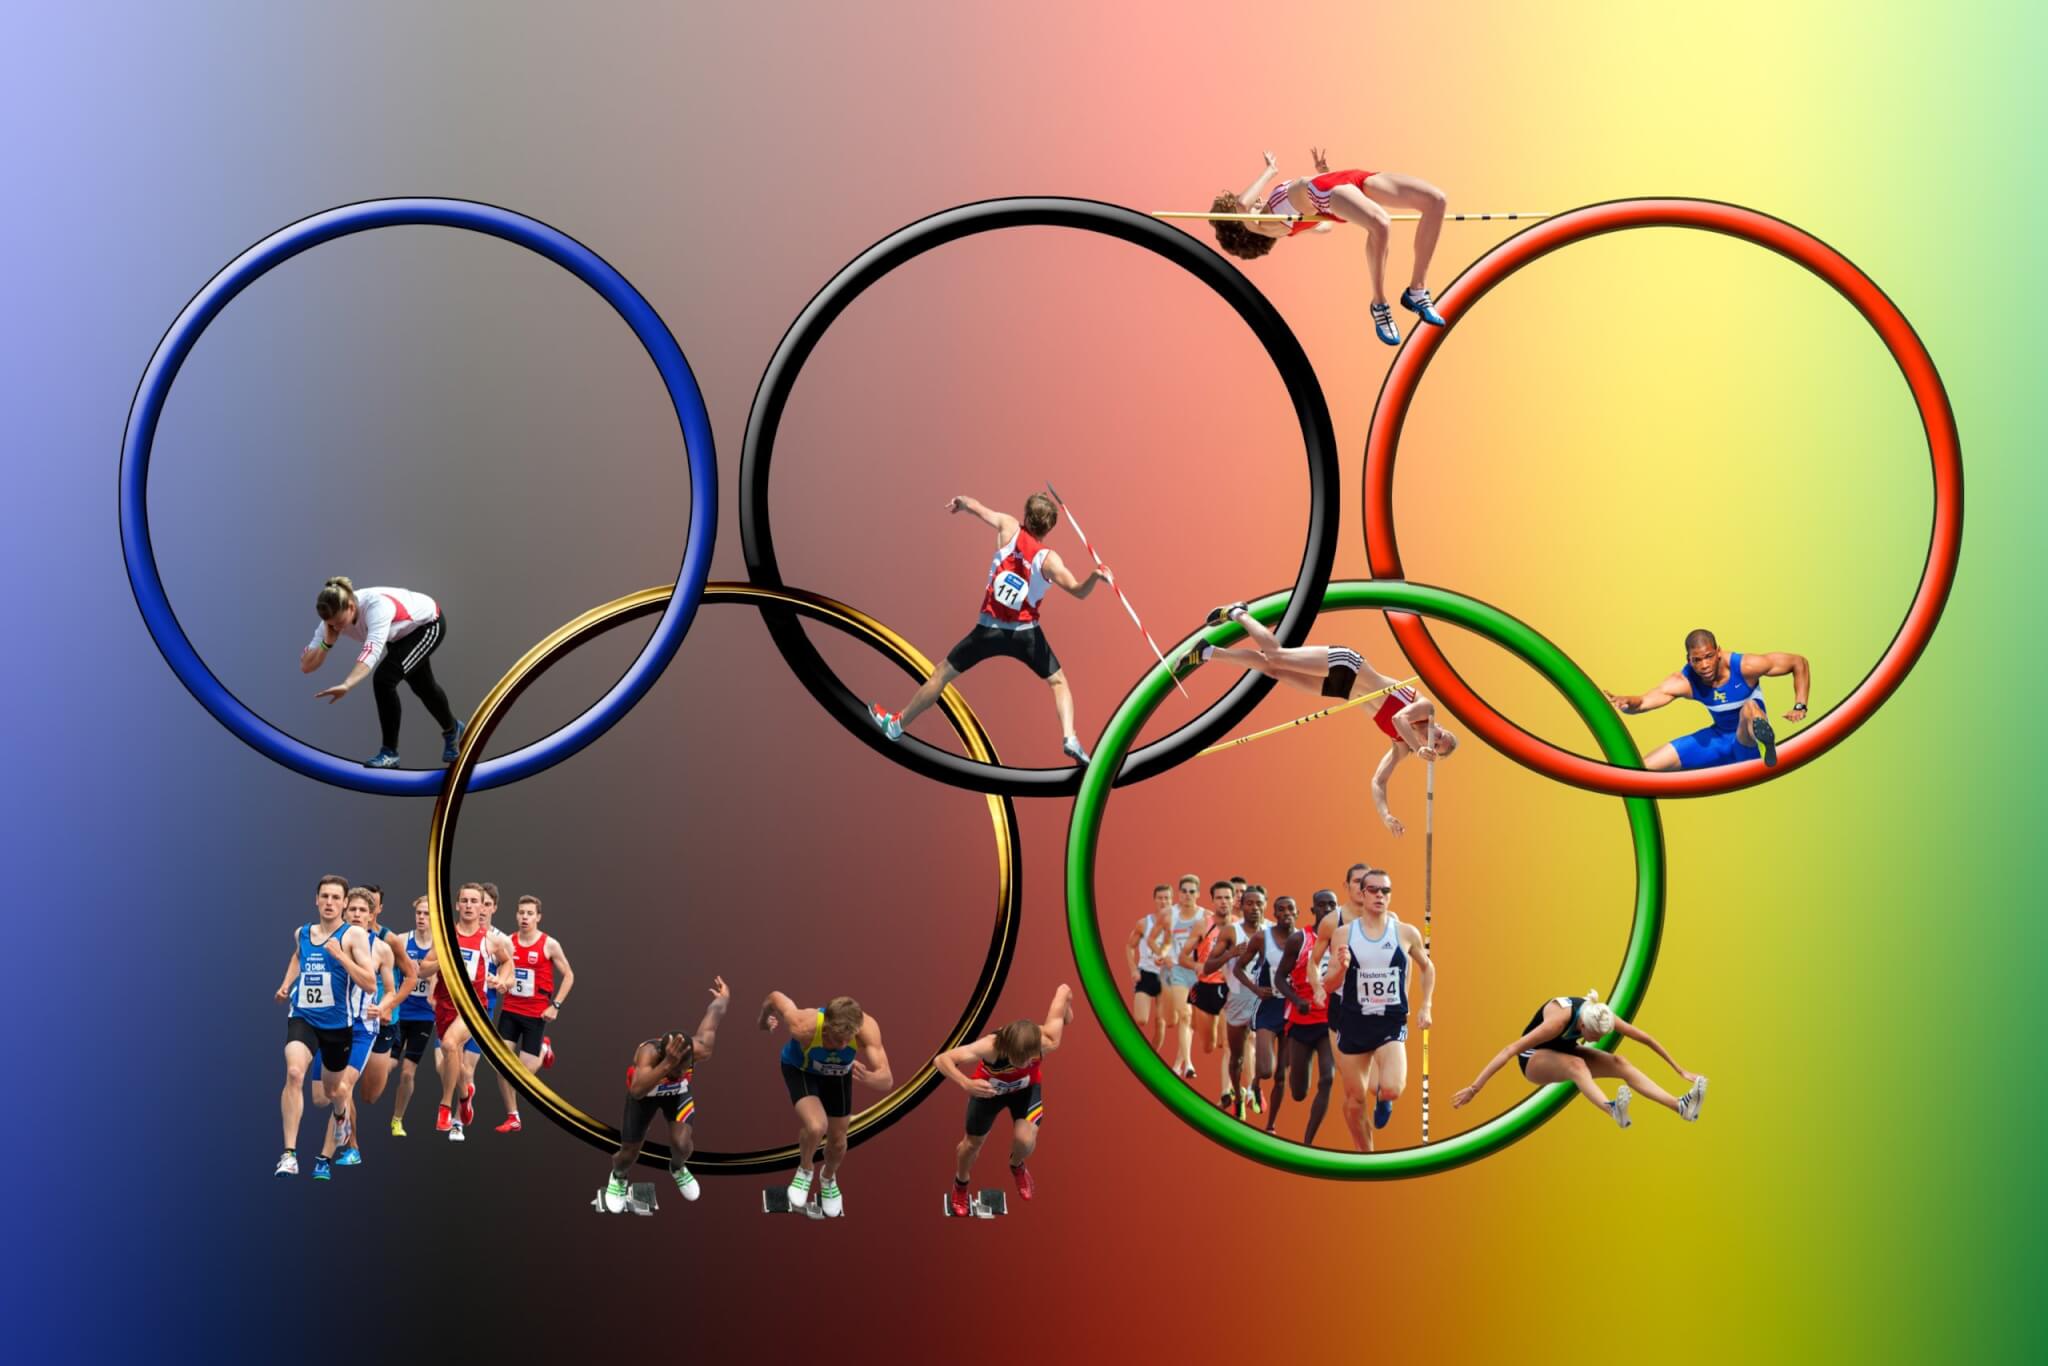 Comment profiter des Jeux olympiques sans assister aux épreuves? La mairie  de Paris se prépare